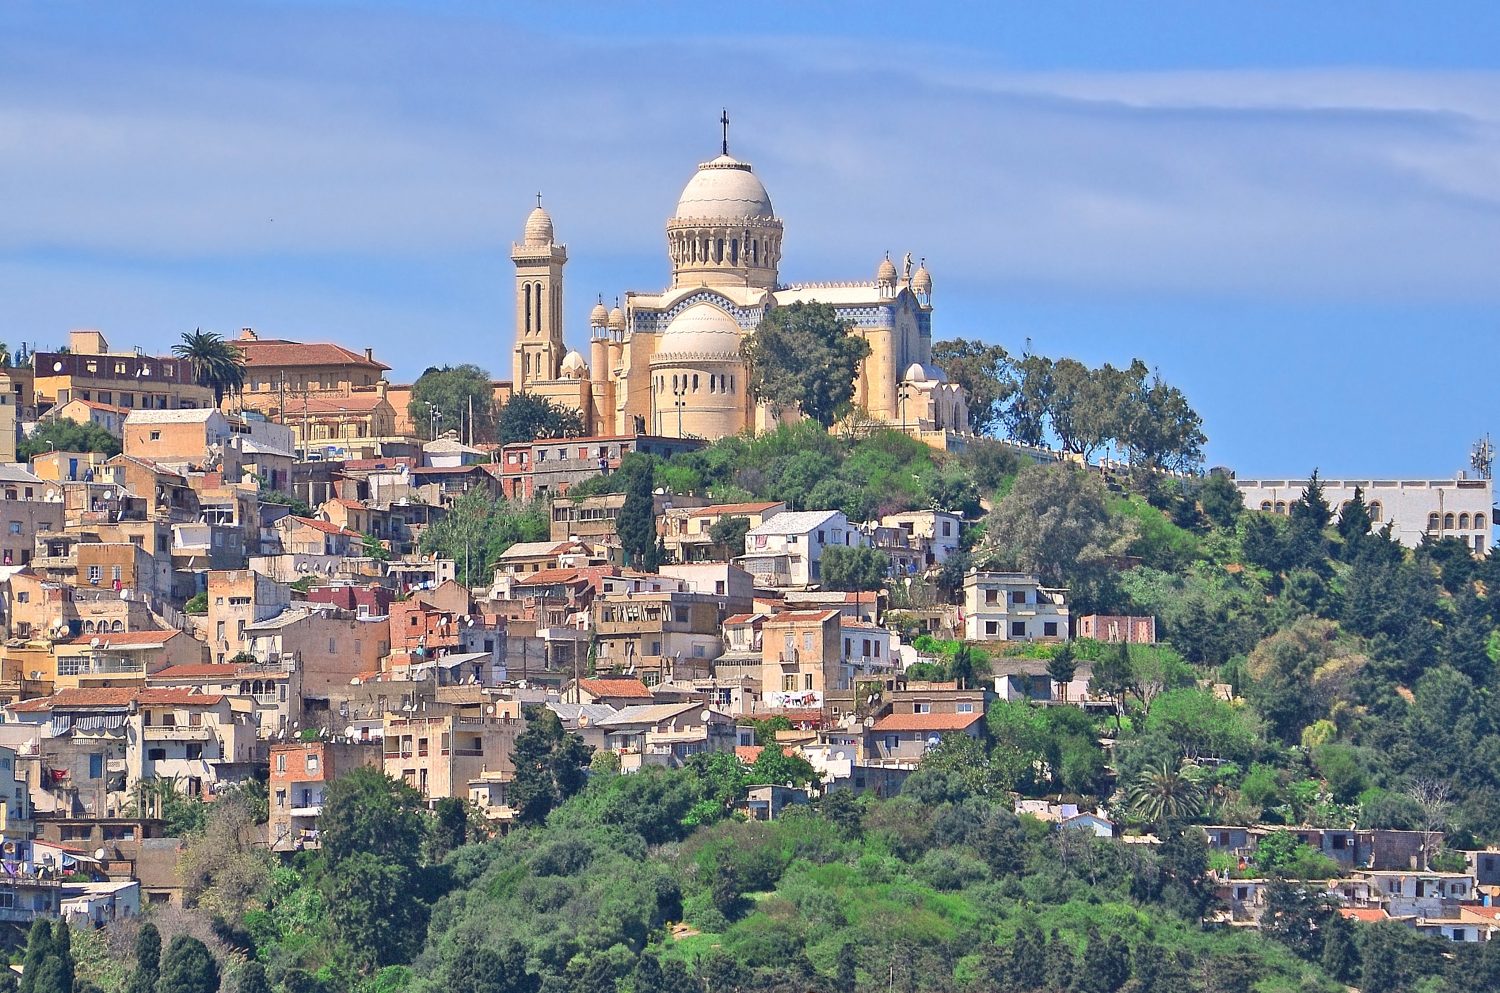 La Basilica cattolica di Nostra Signora d'Africa nella capitale dell'Algeria - Algeri